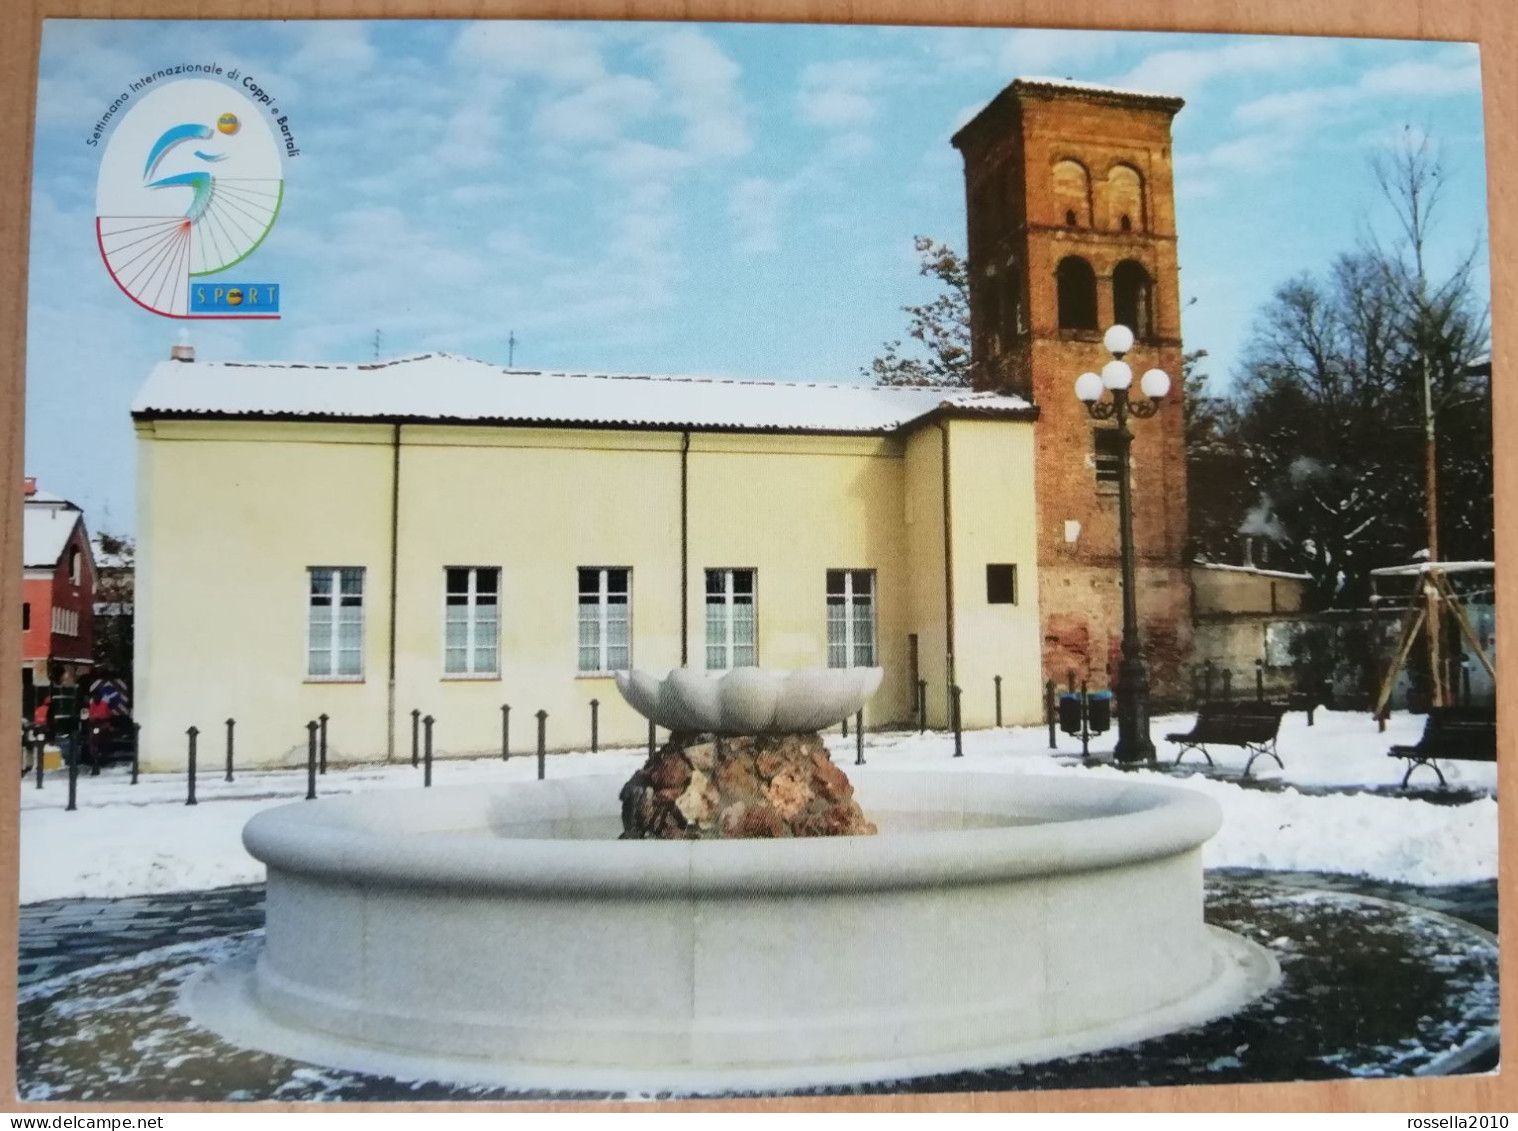 CARTOLINA CICLISMO ITALIA SASSUOLO 2003 SETTIMANA INTERNAZIONALE DI COPPI BARTALI Italy Postcard ITALIEN Ansichtskarten - Demonstrationen